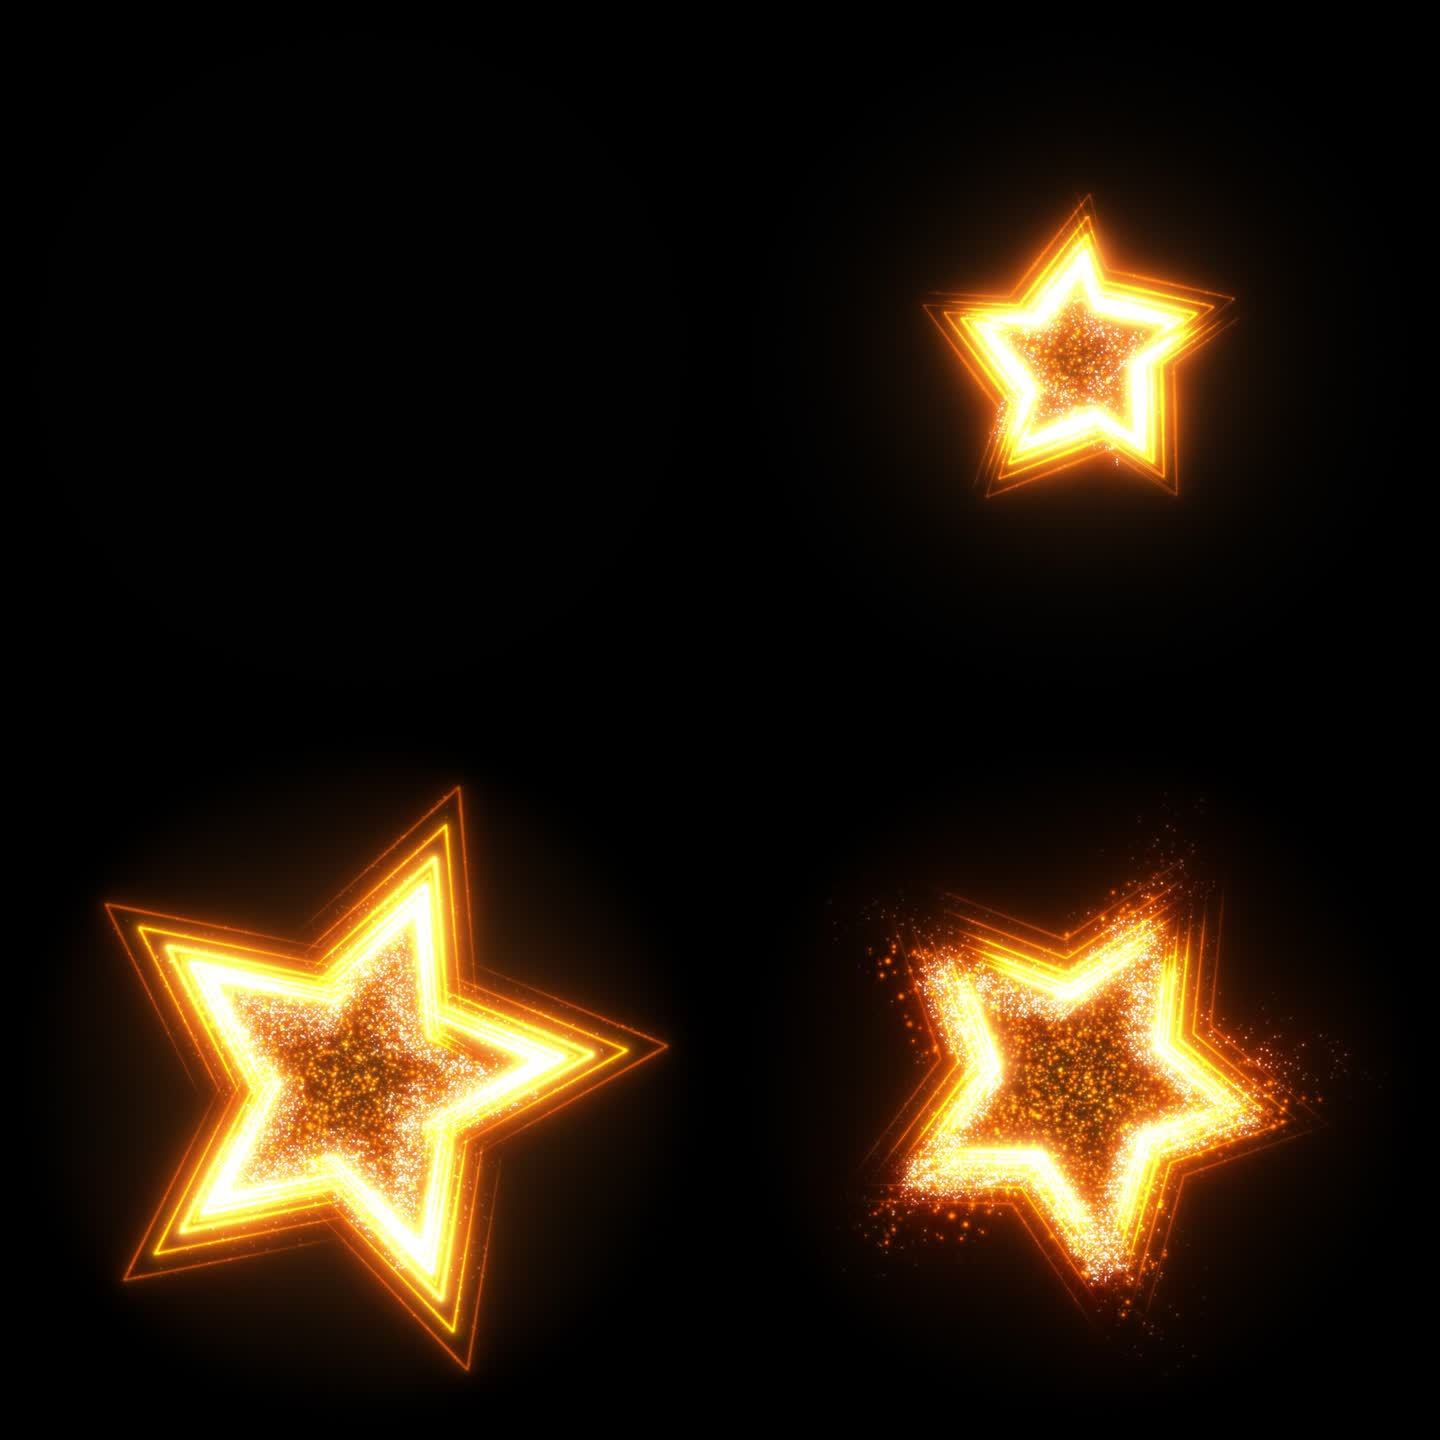 星星粒子爆炸游戏特效素材